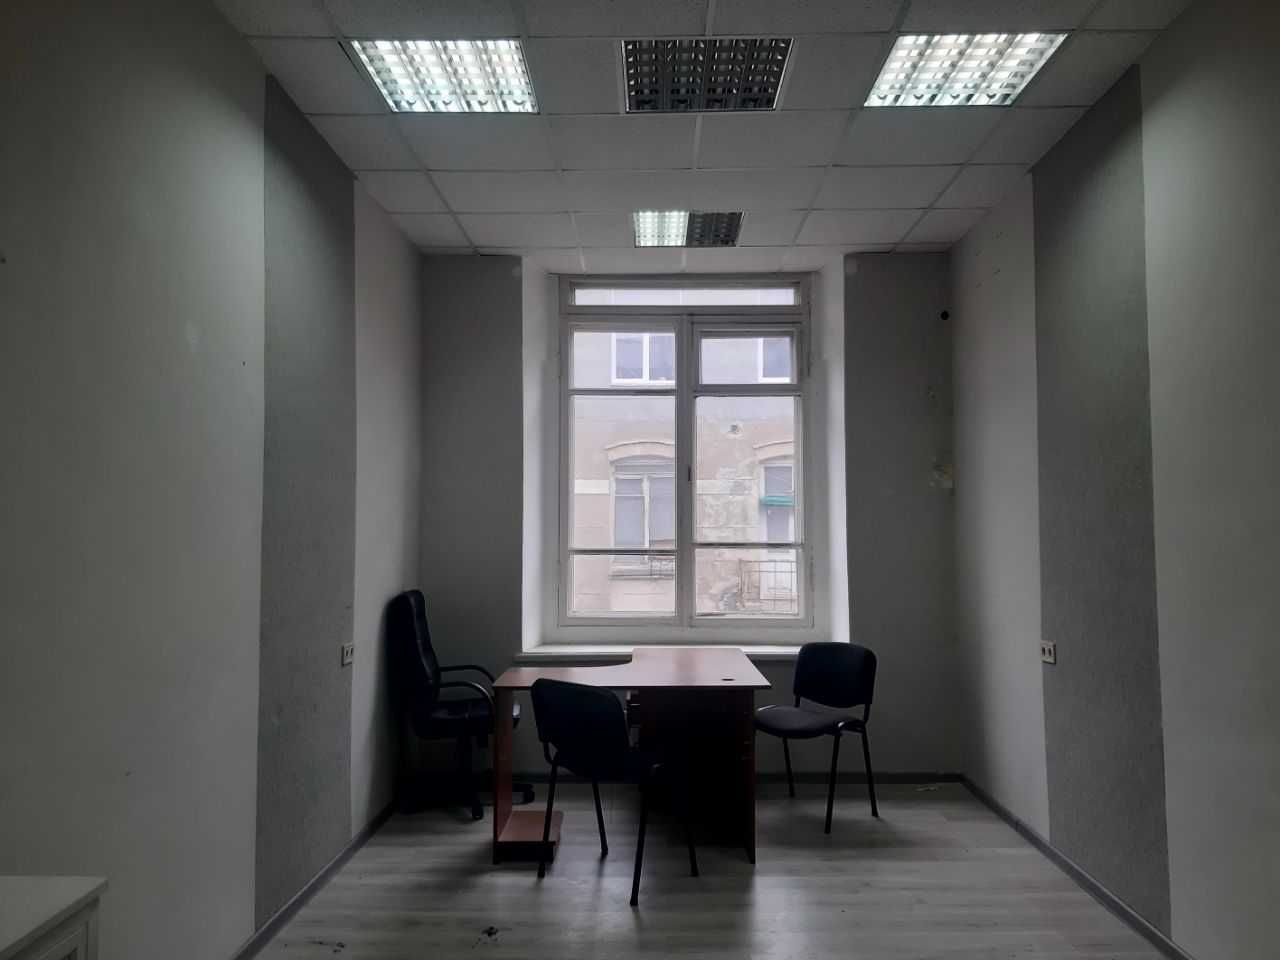 Аренда Офиса на Пушкинской 16 м2